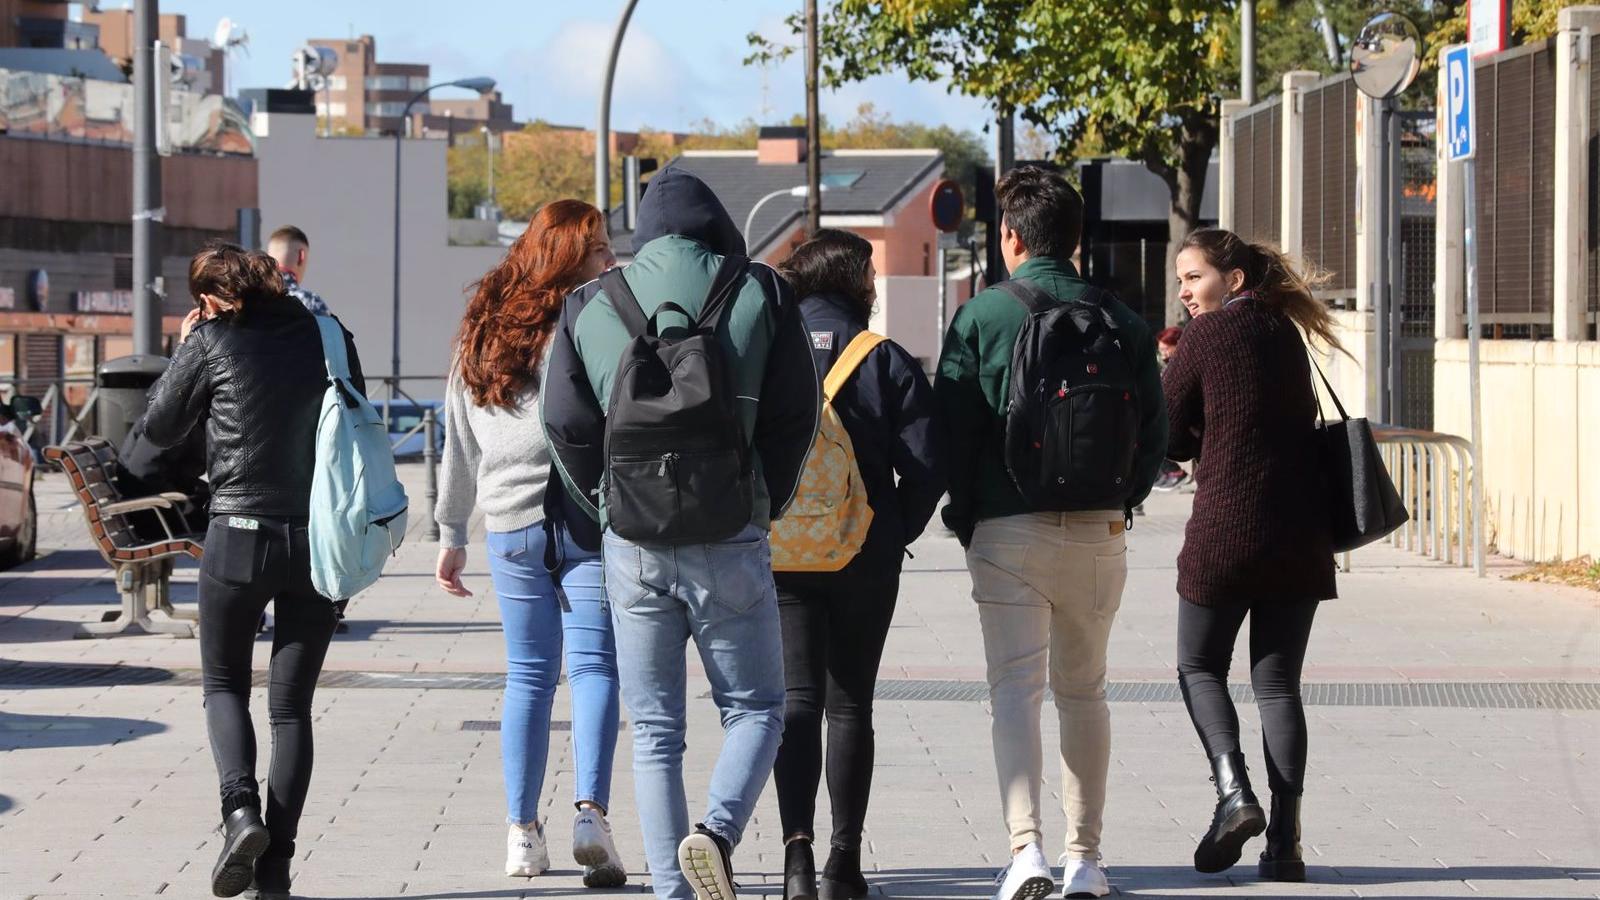 El Programa de Prevención de la Violencia Urbana del Ayuntamiento de Madrid ha atendido ya a 31 jóvenes